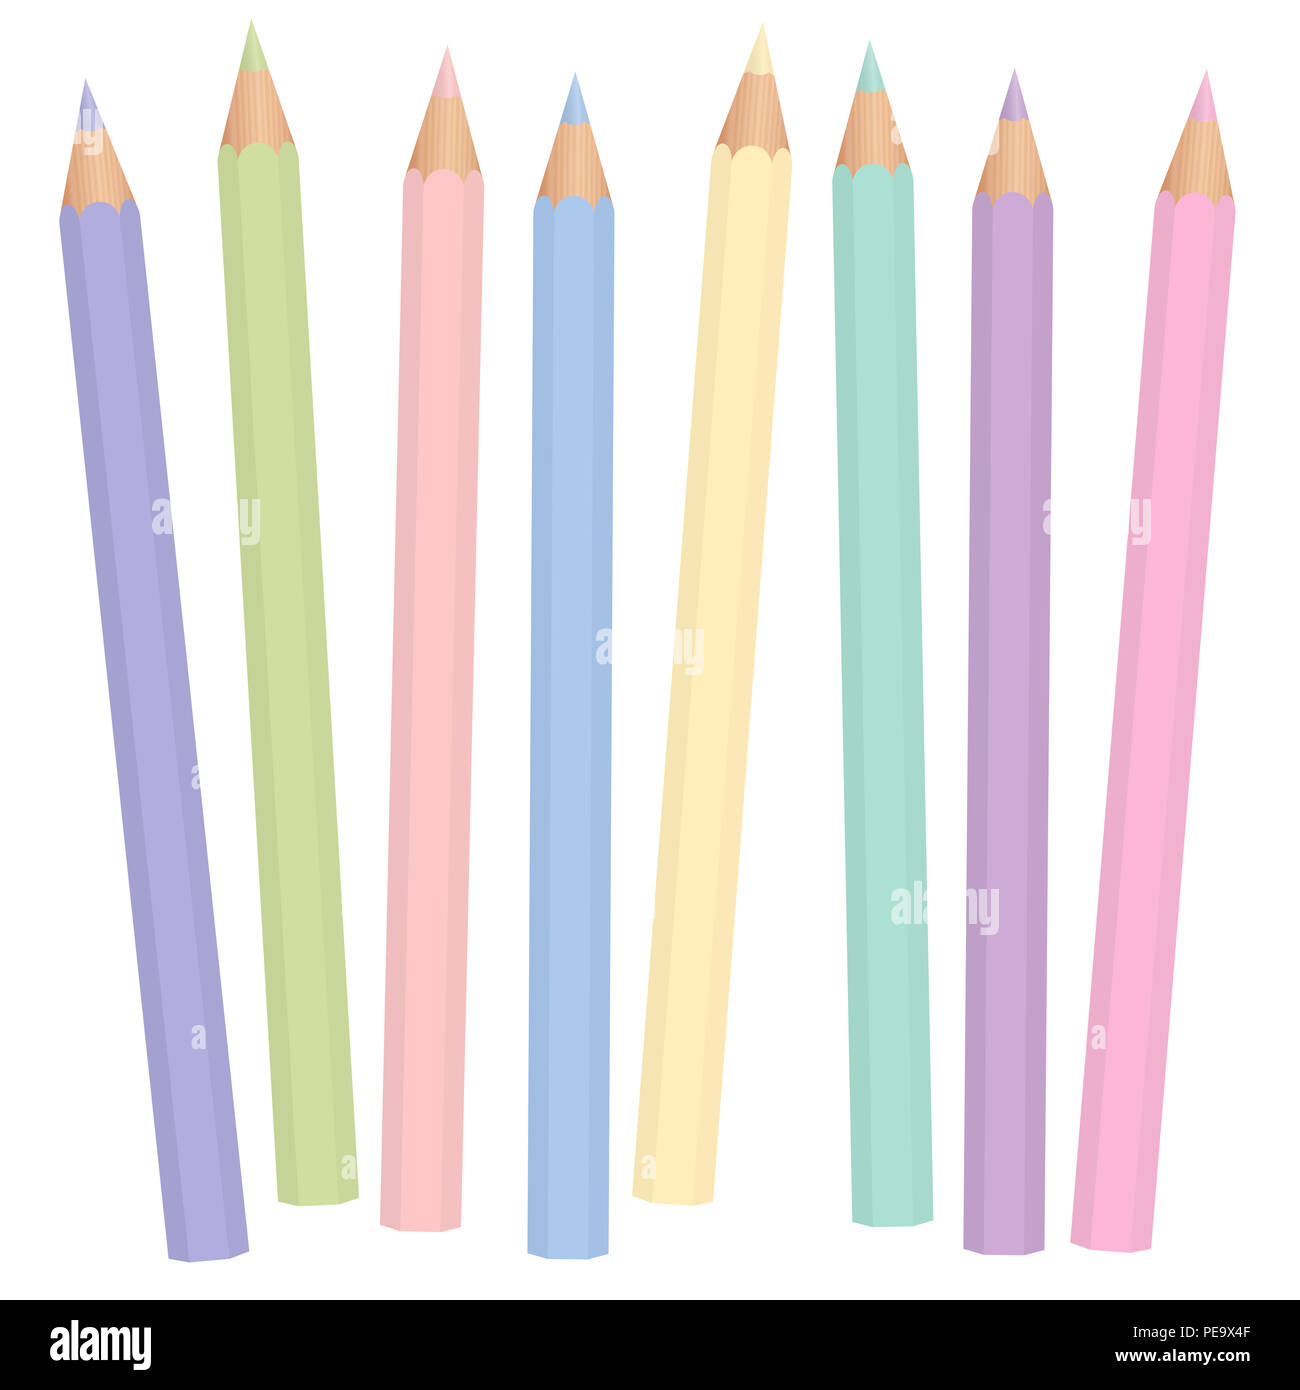 Pastel crayons. Soft, pale, faint, vague, desaturated color pencil set like baby blue, lavender, periwinkle, milky, mauve. Stock Photo